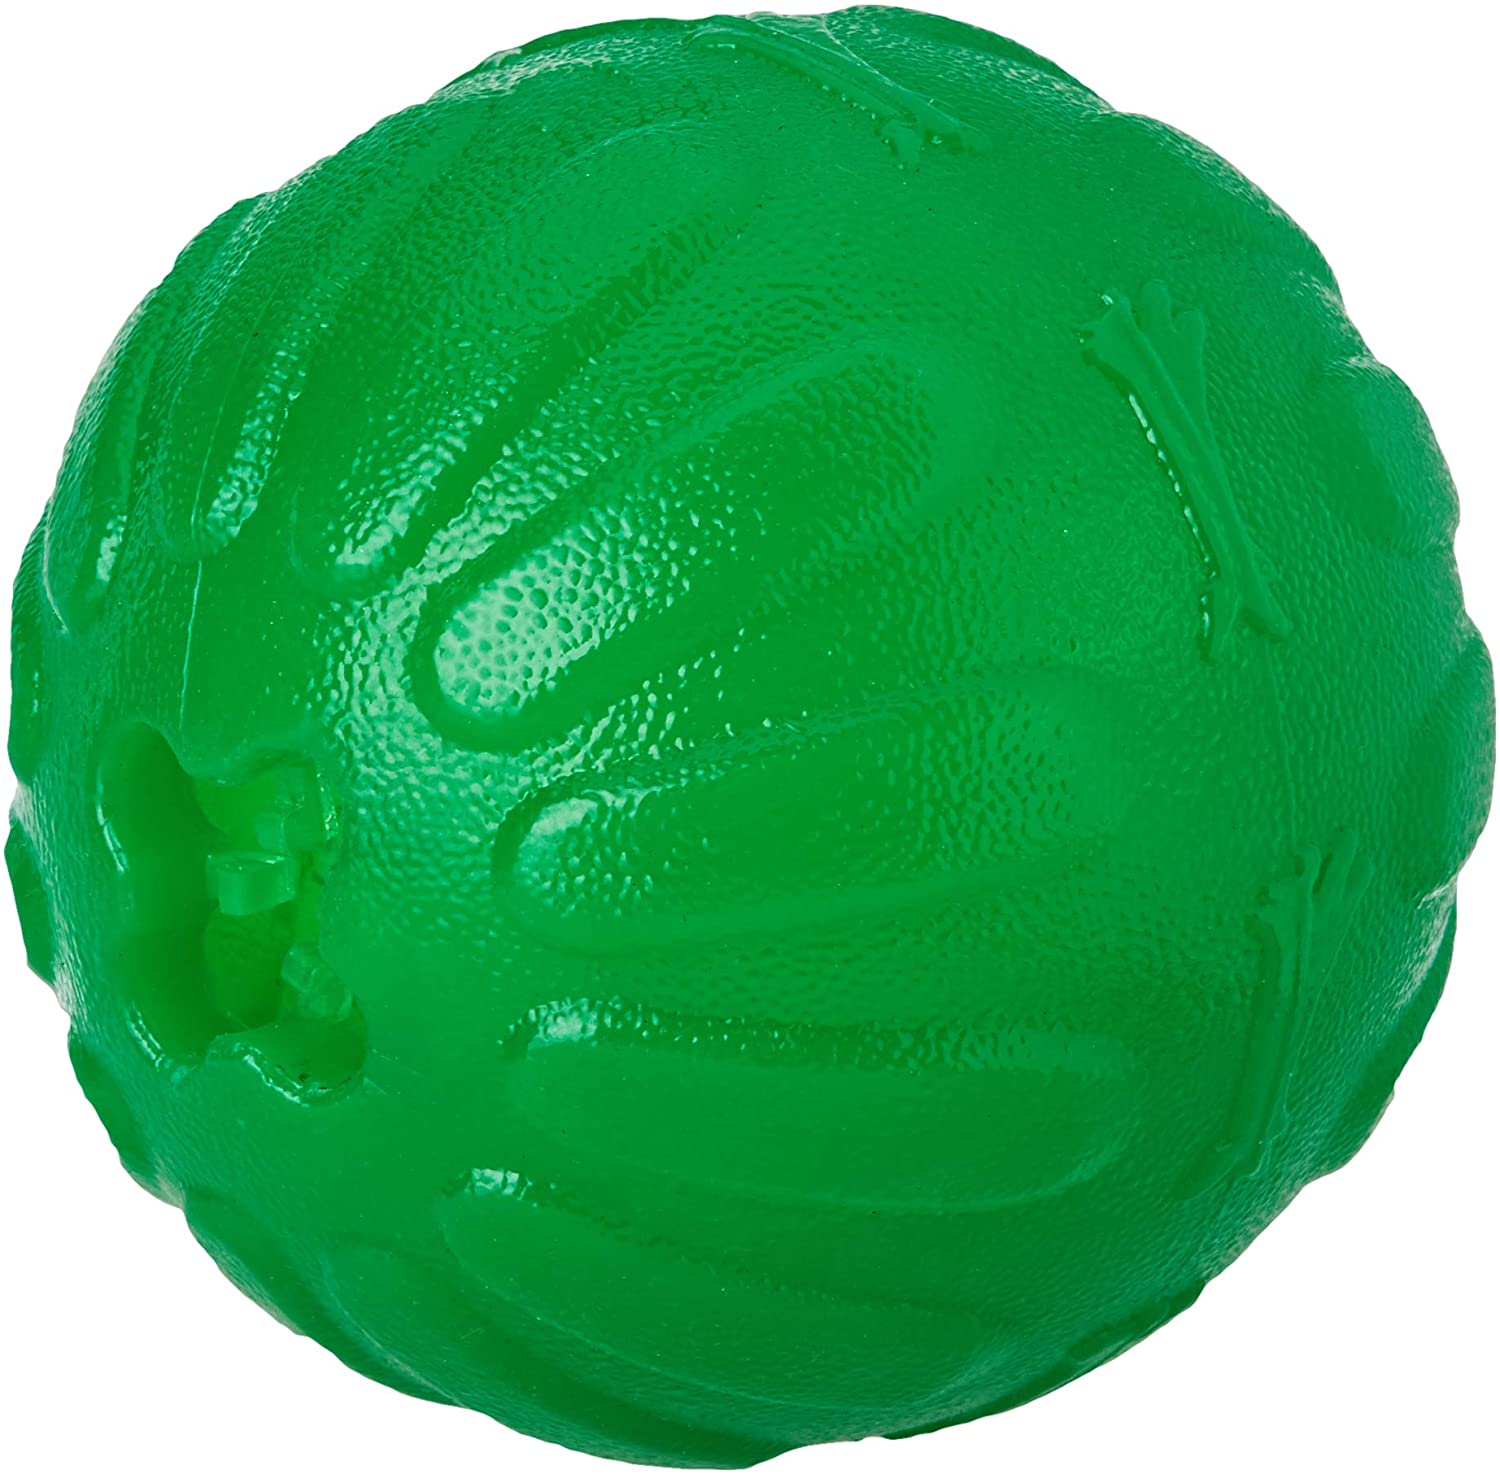  JULIUS K9 Treat Dispensing Chew Ball-L, 10 Cm, Multicolor 